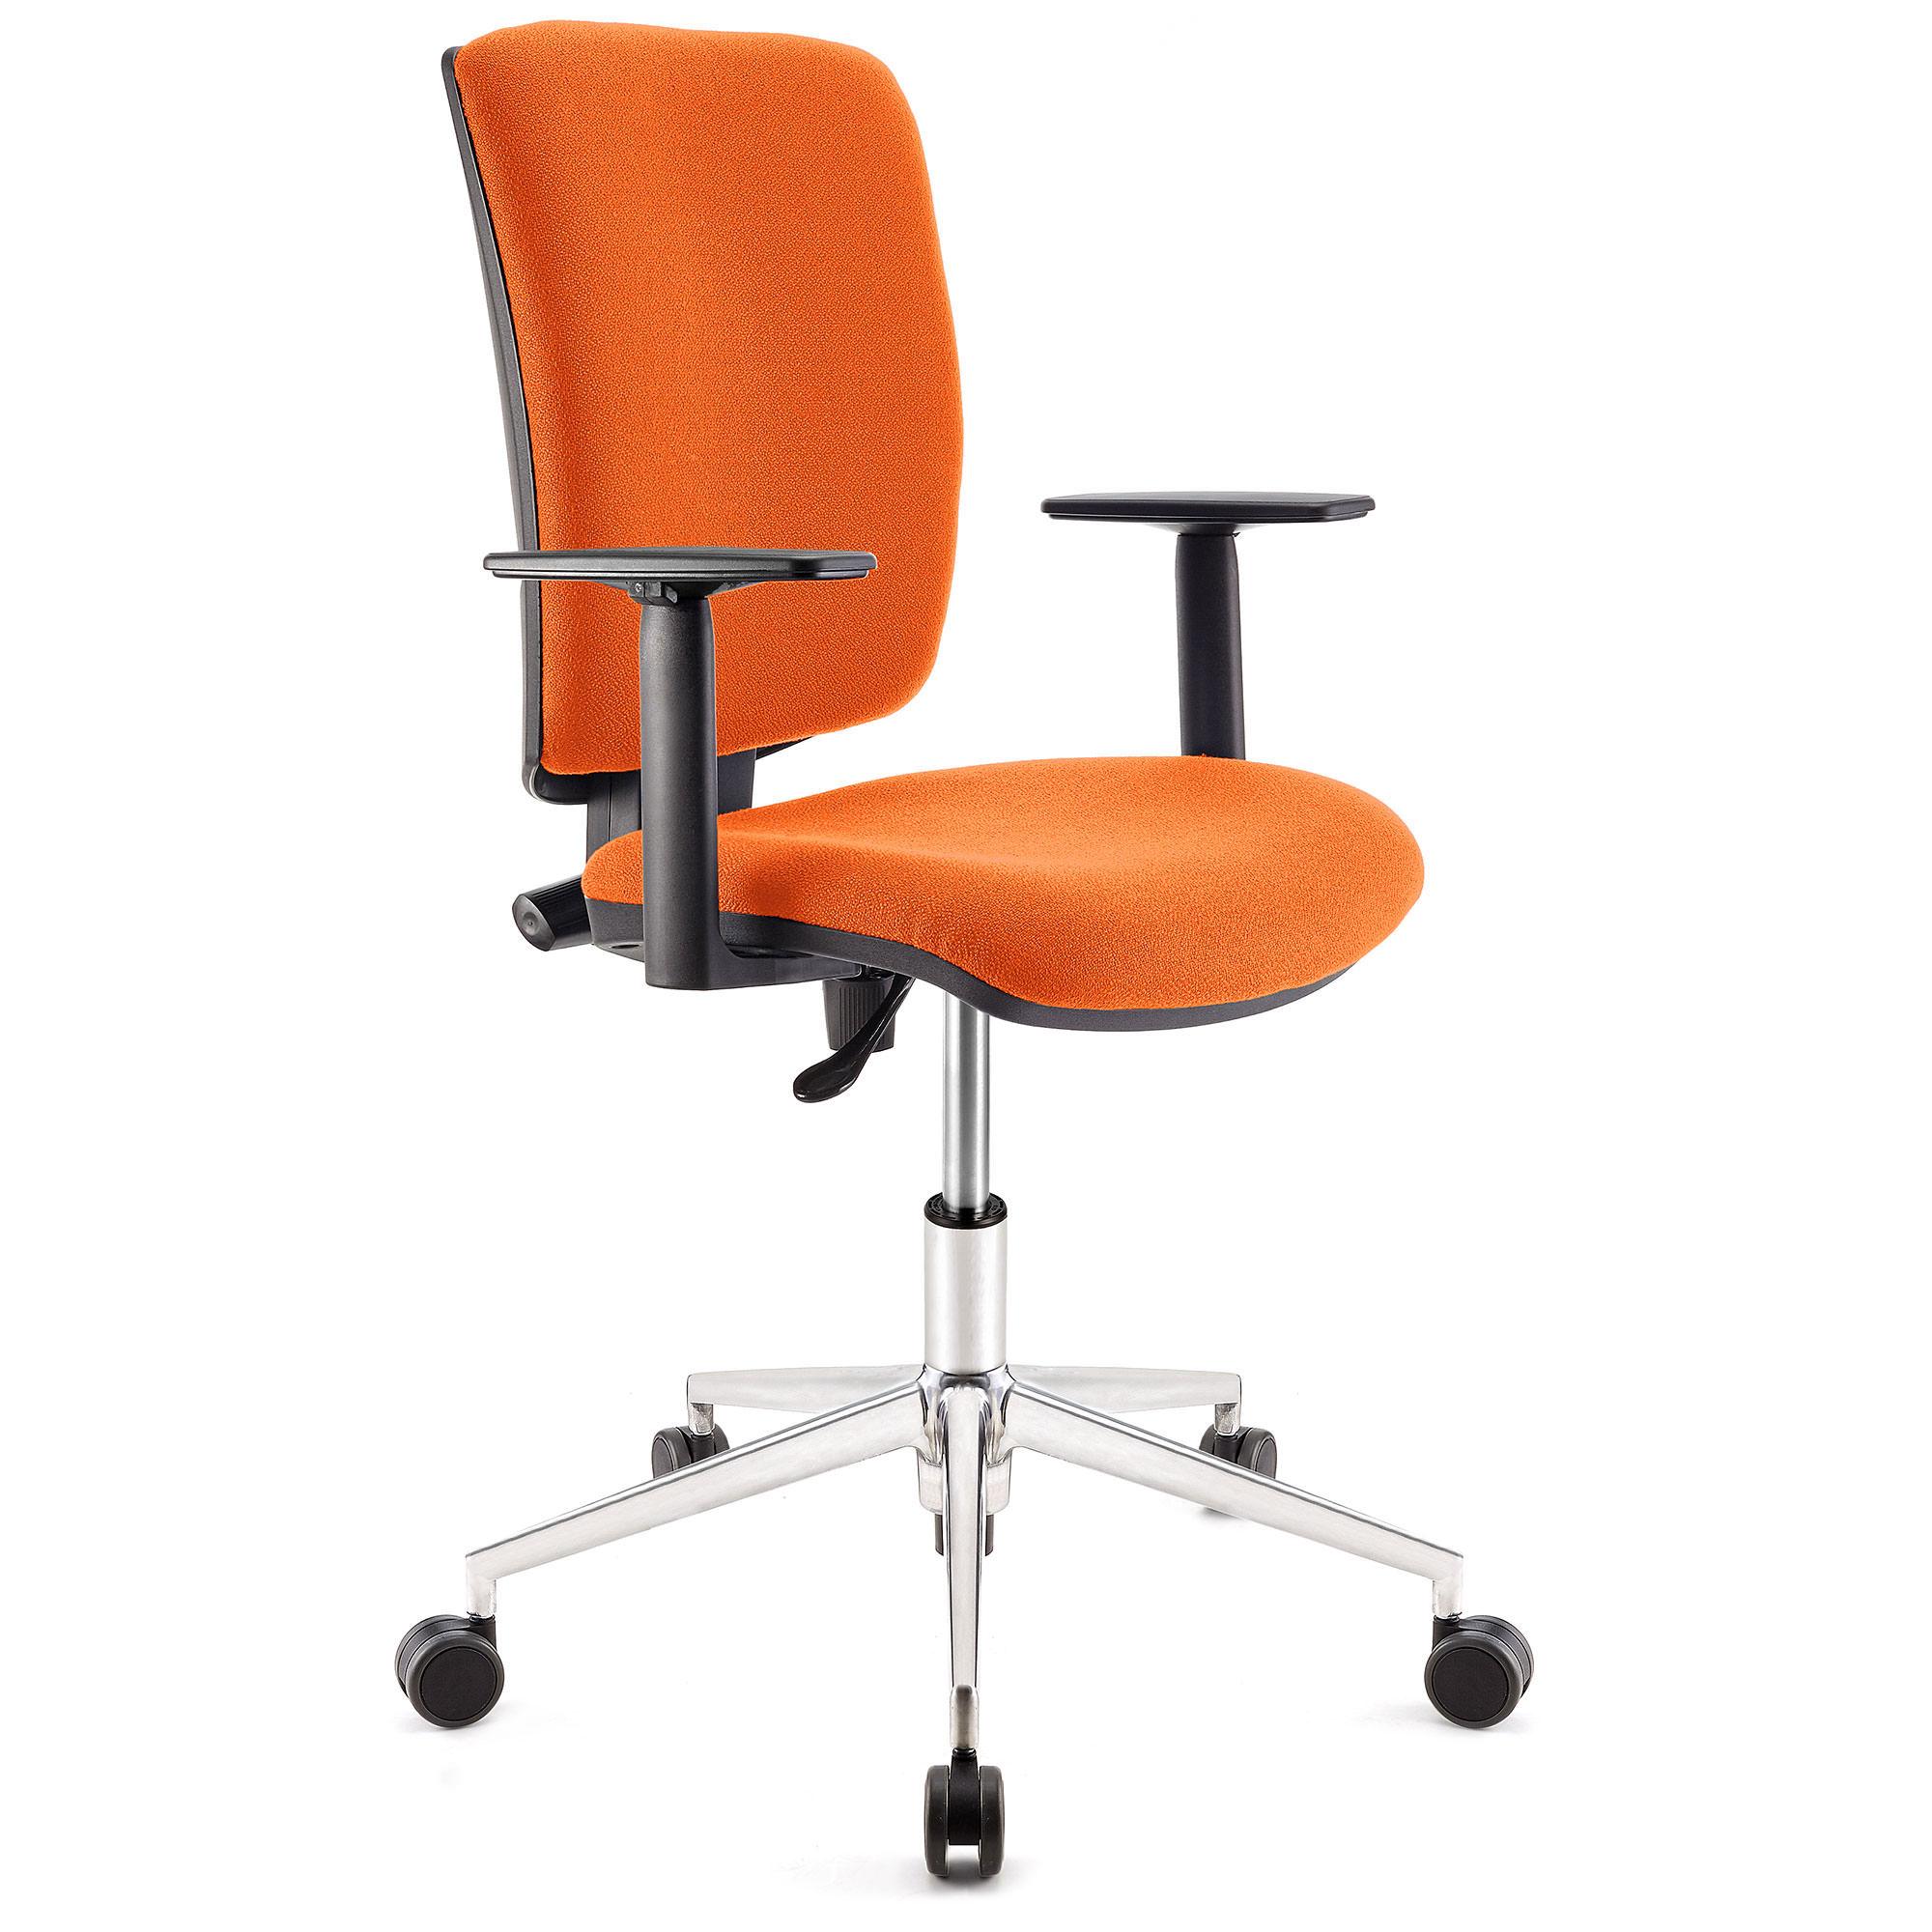 Bürostuhl ATLAS PRO STOFF, verstellbare Rücken- und Armlehnen, Metallfußkreuz, Farbe Orange